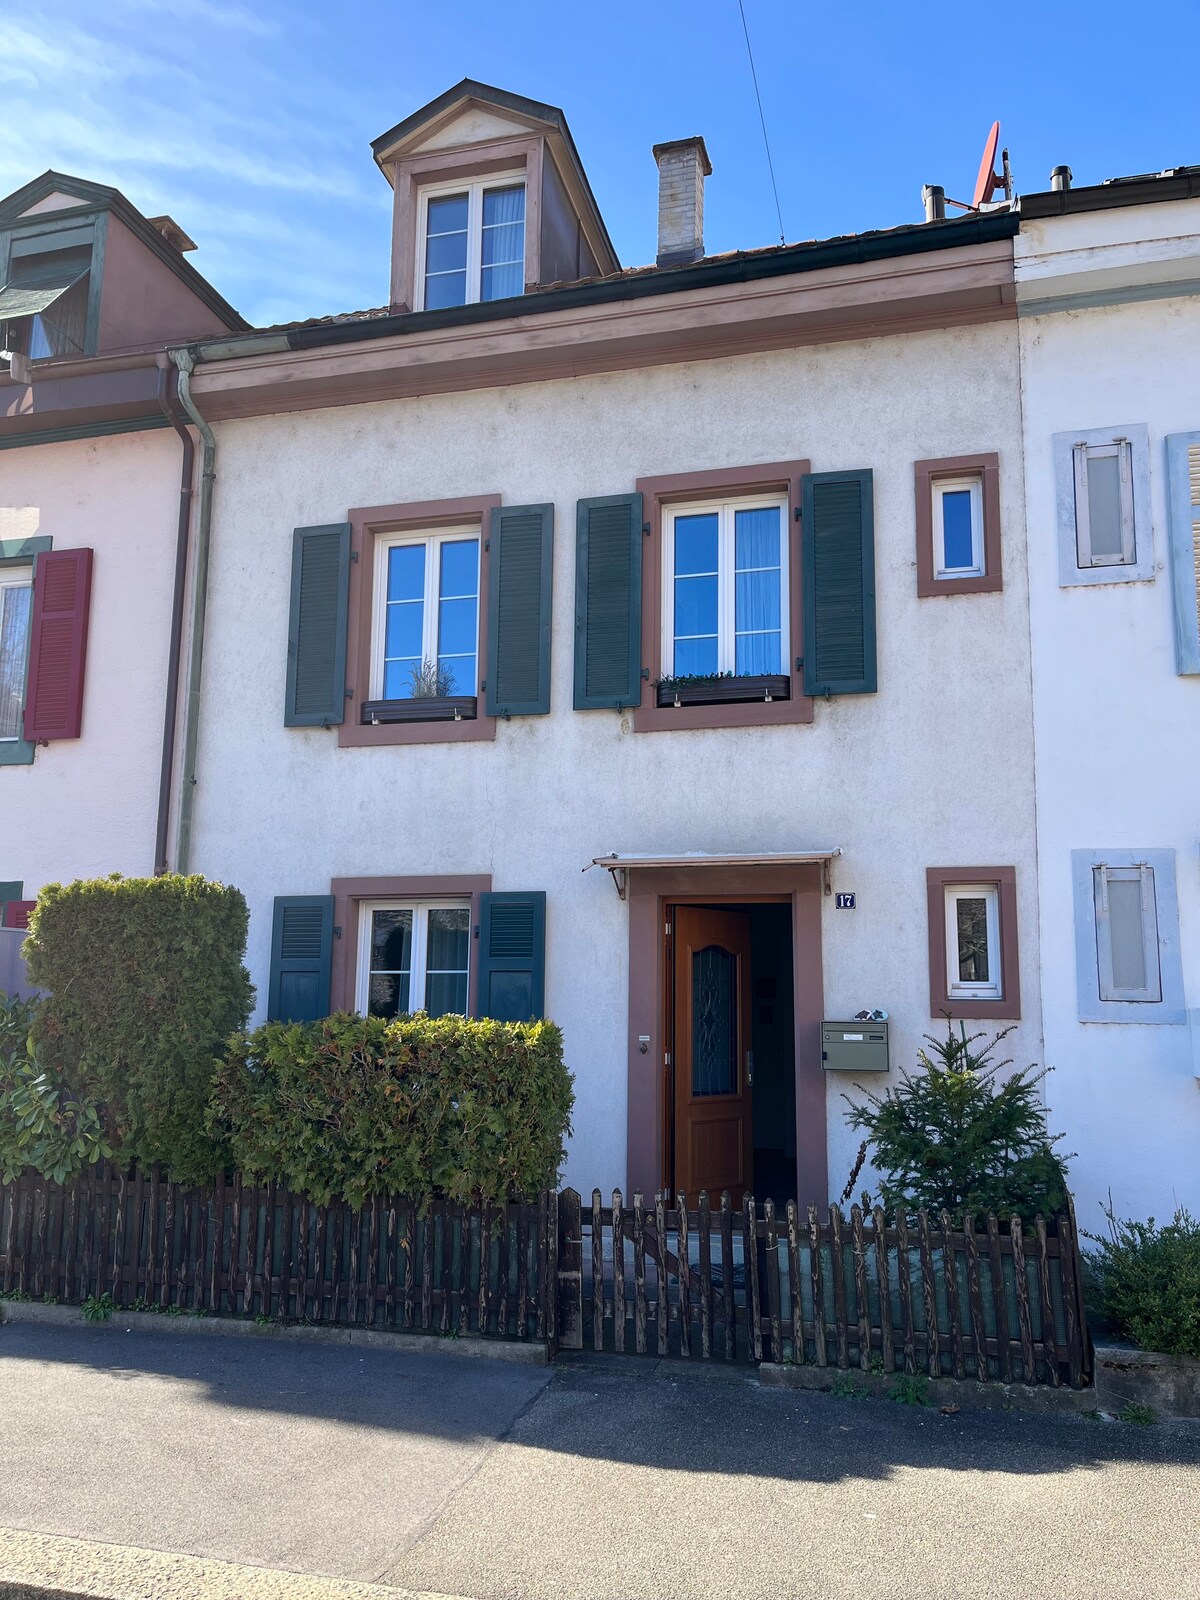 Schönes Haus in Basel.